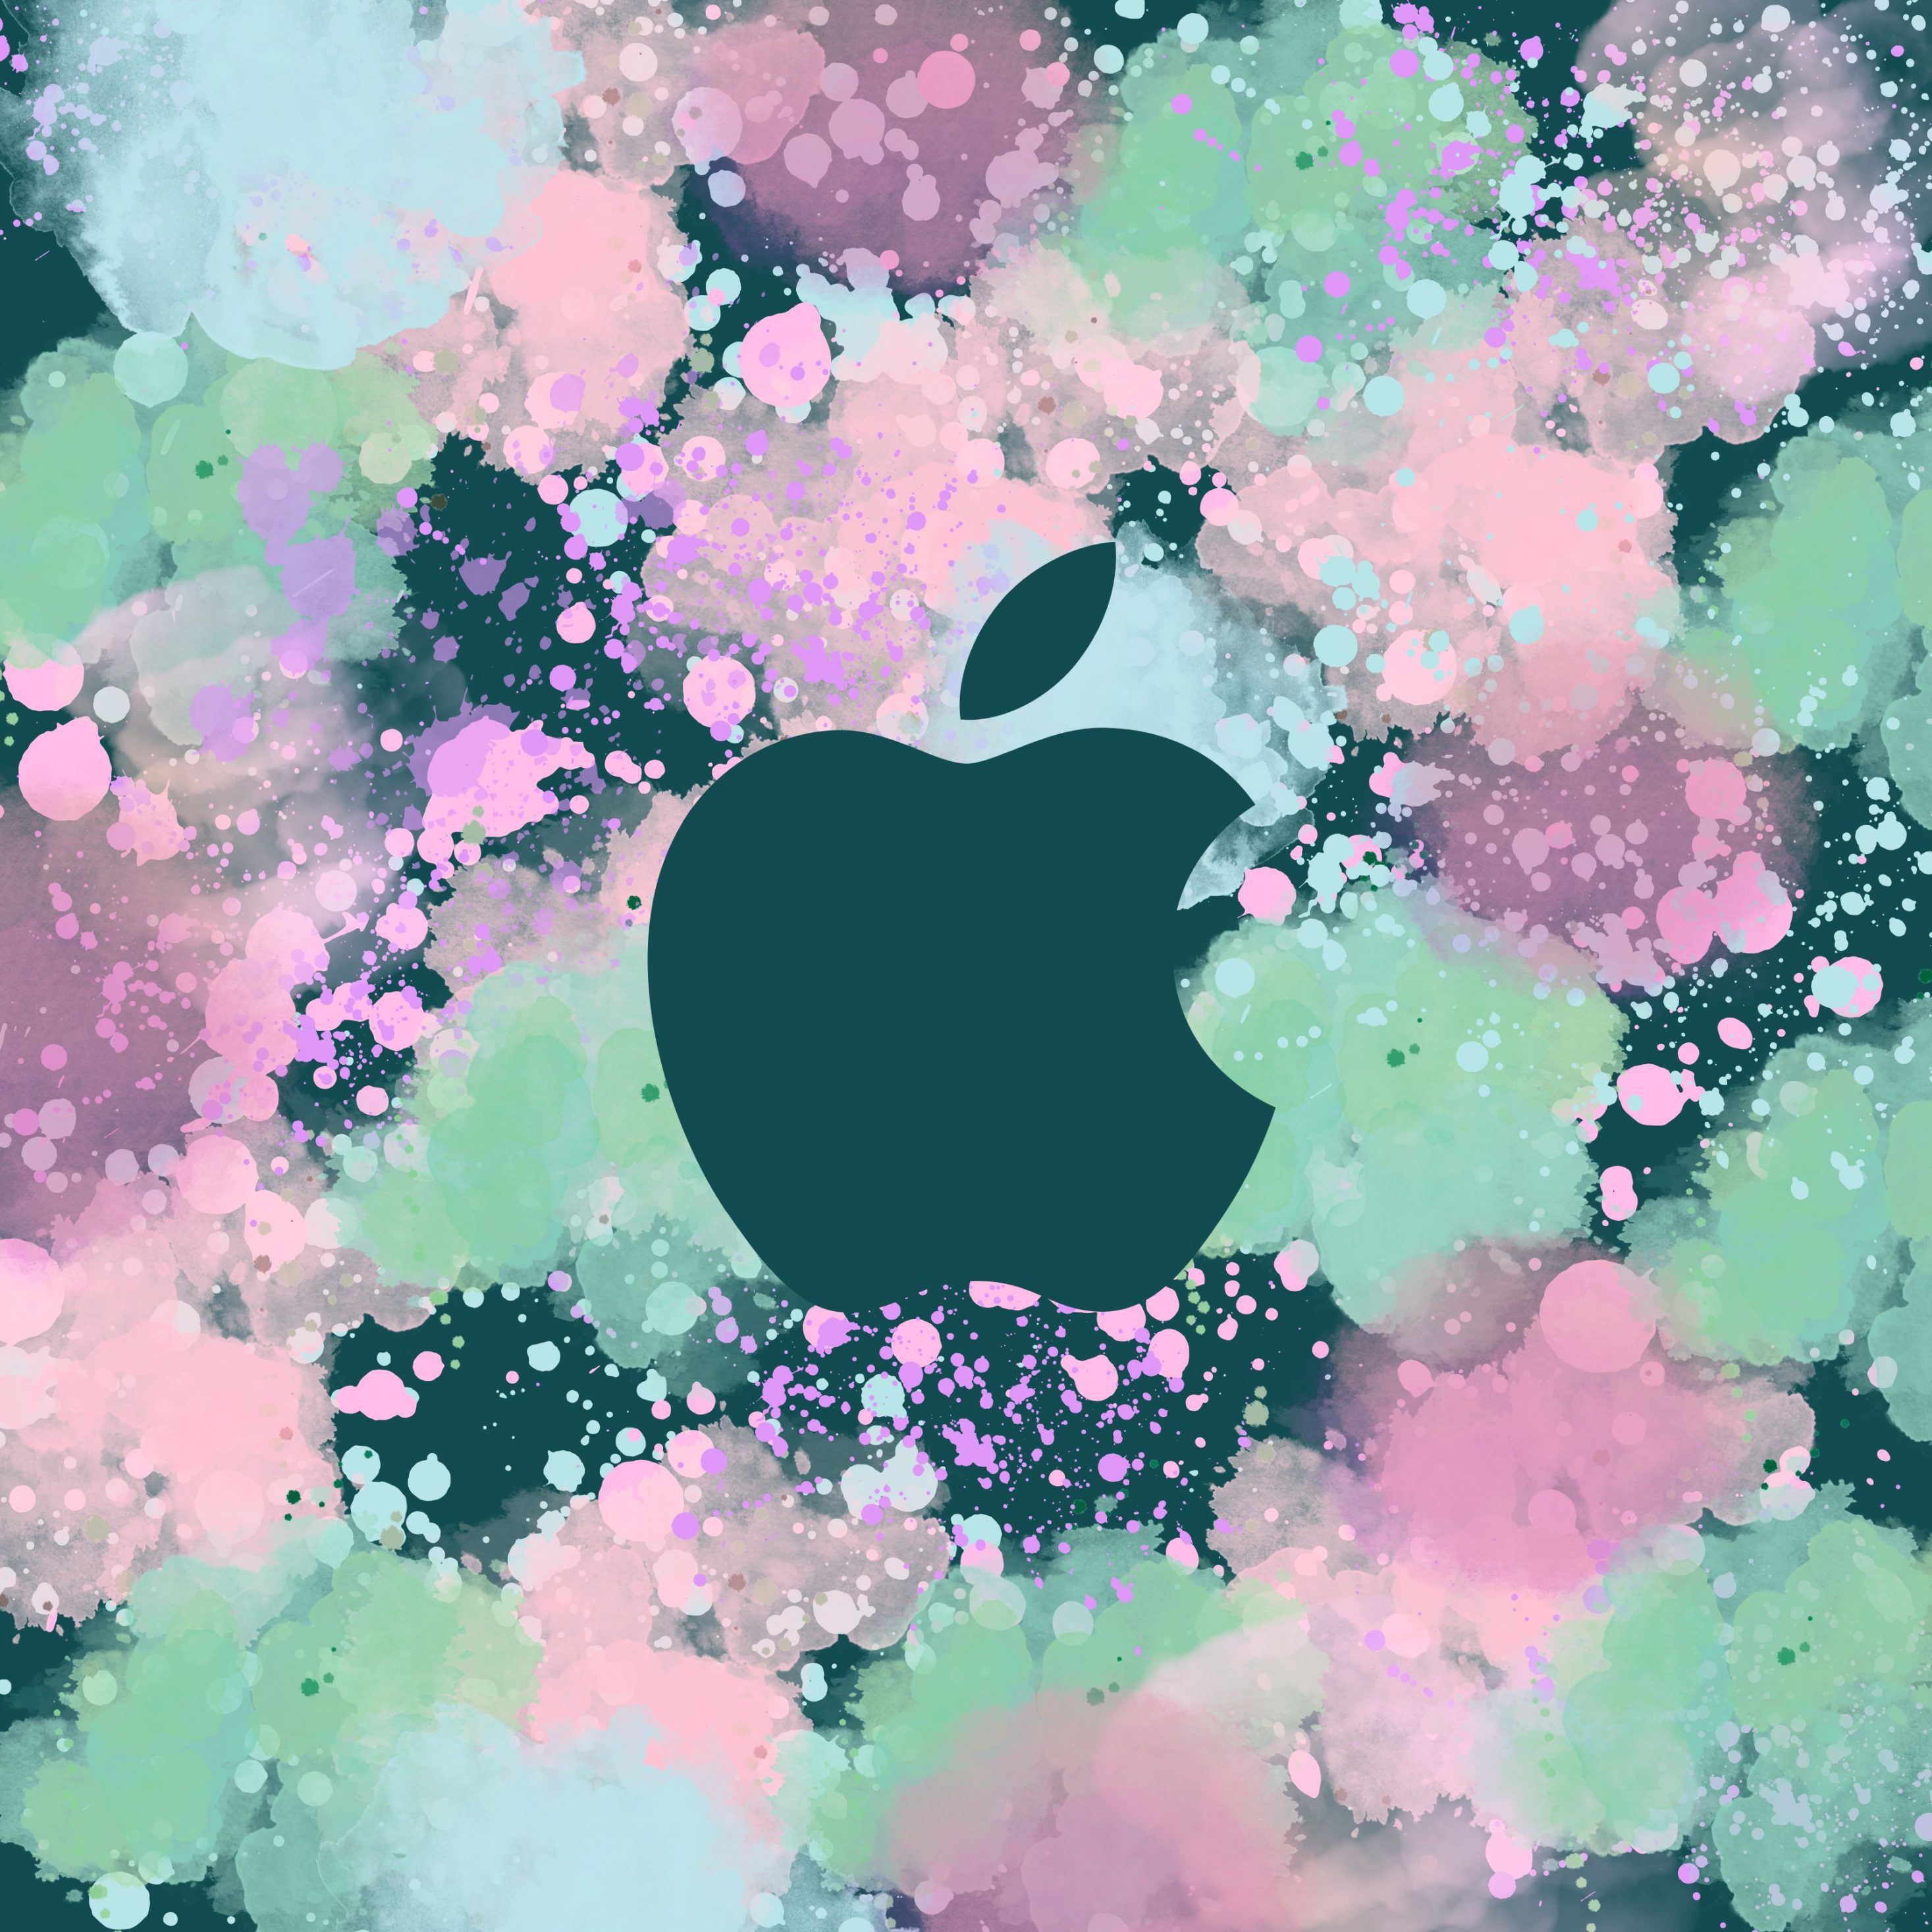 2934x2934 iOS iPad wallpaper 4k Pastel Watercolour Apple Ipad Wallpaper 2934x2934 pixels resolution